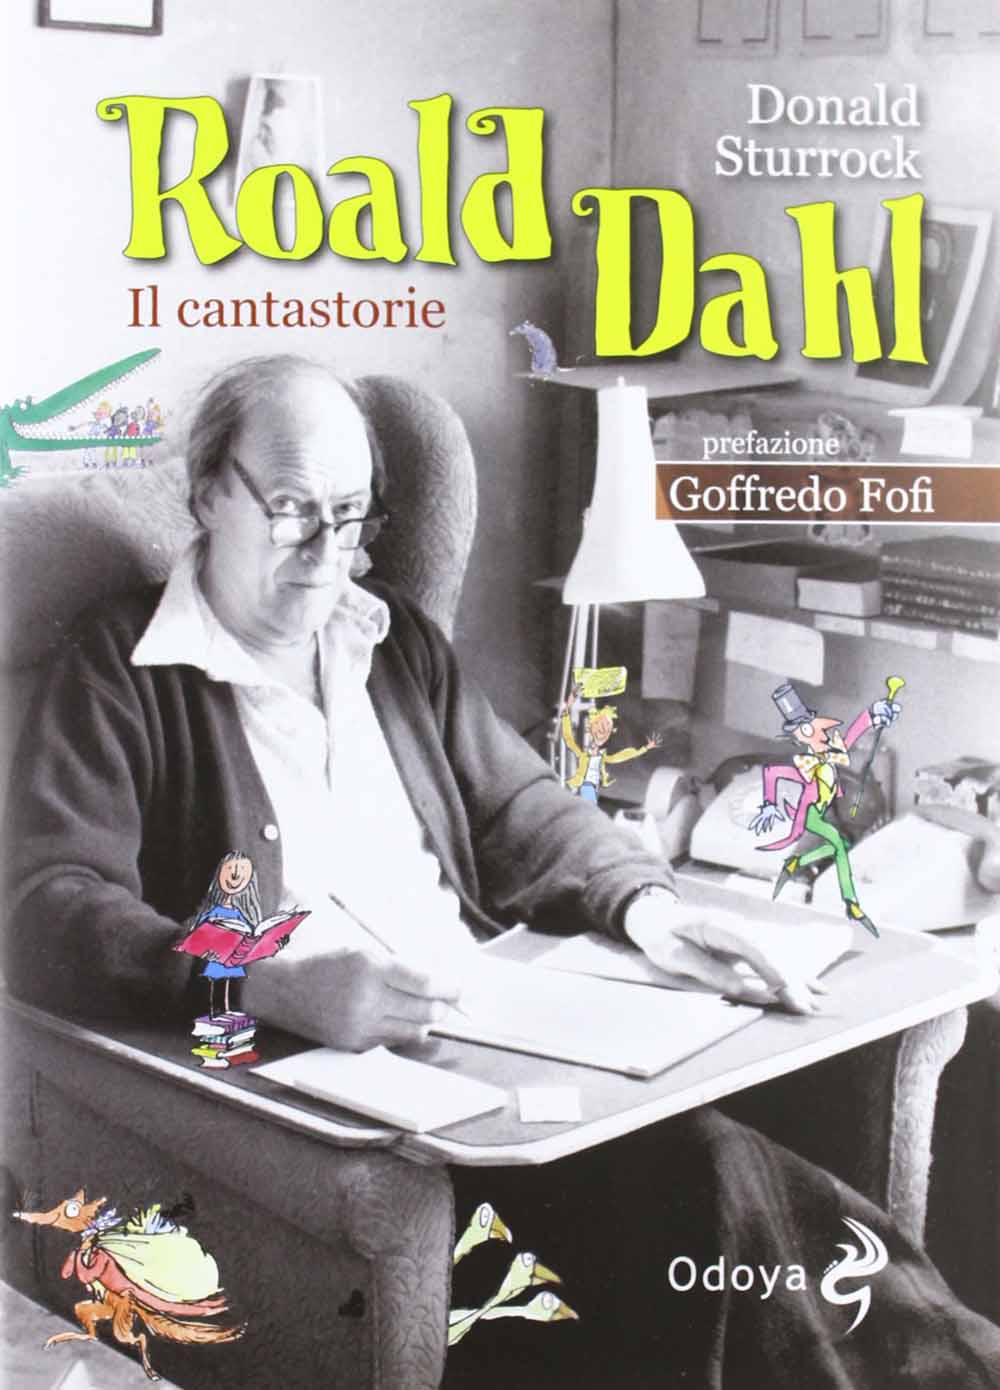 Libri Donald Sturrock - Roald Dahl. Il Cantastorie NUOVO SIGILLATO, EDIZIONE DEL 22/11/2012 SUBITO DISPONIBILE